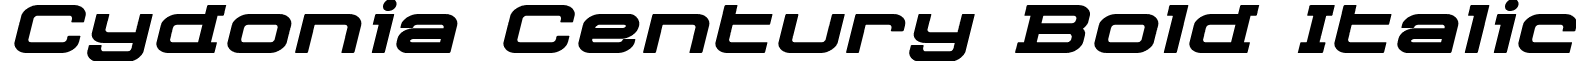 Cydonia Century Bold Italic font - cydoniacenturyboldital.ttf